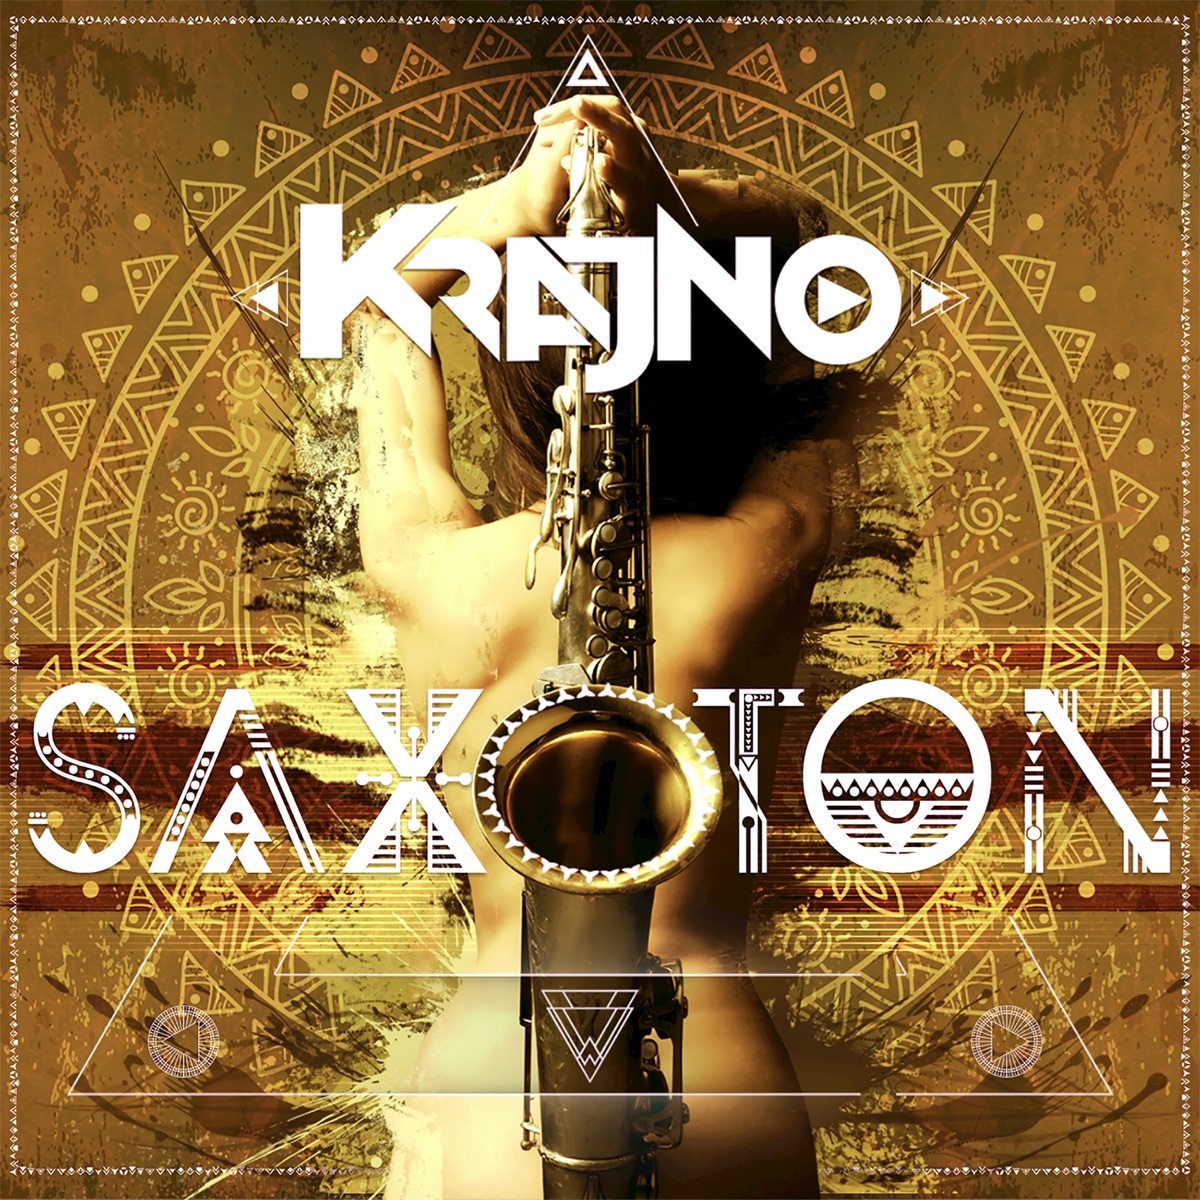 Saxoton - Single - Album by Krajno - Apple Music